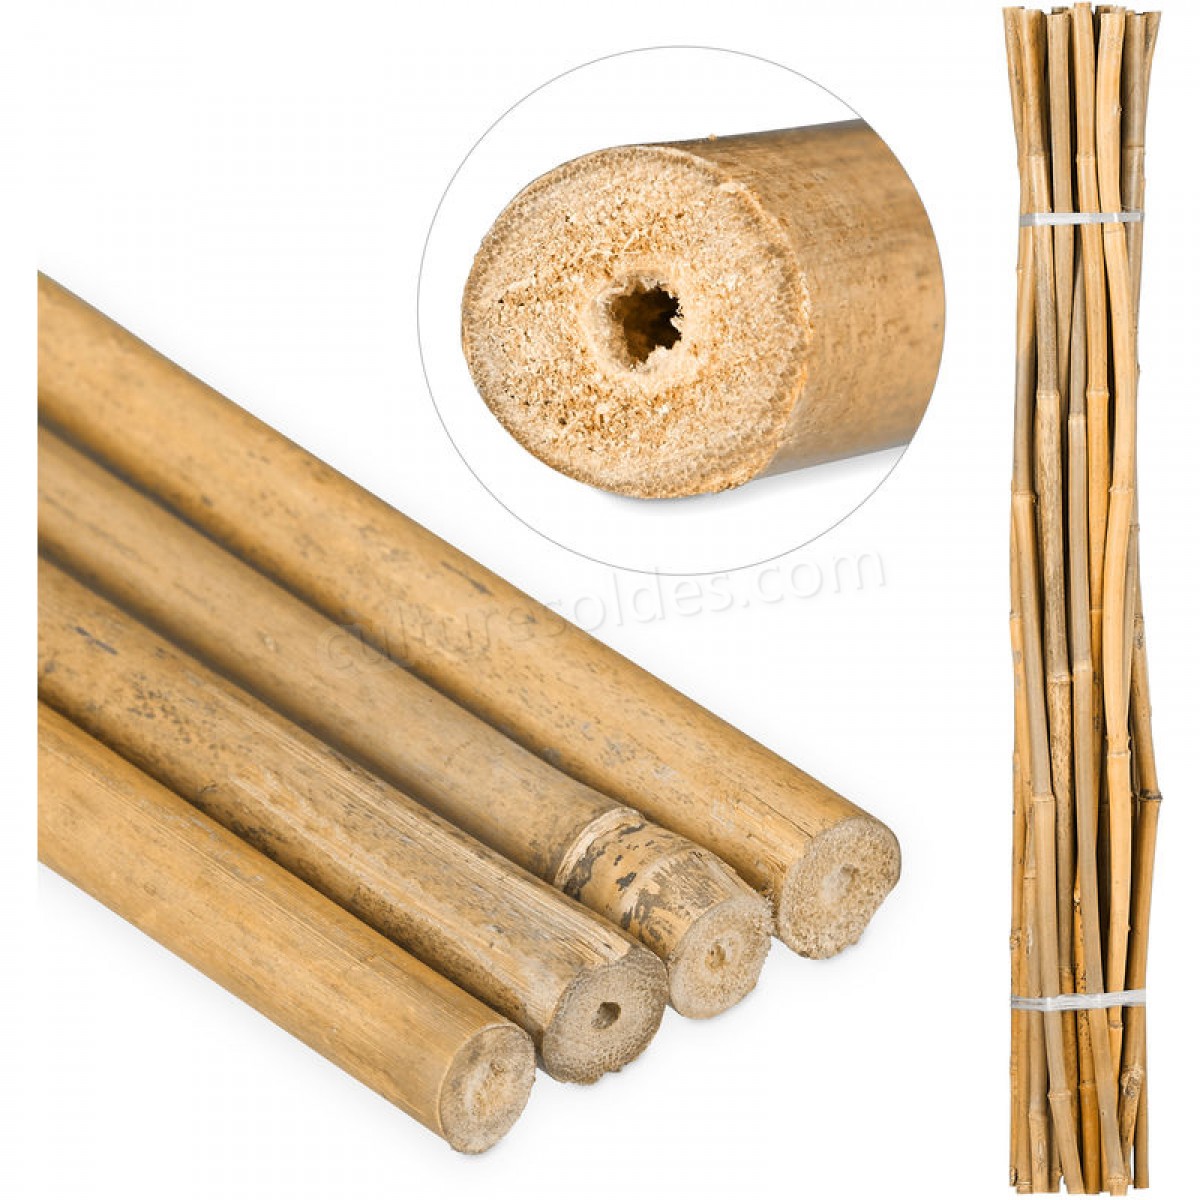  Tiges en bambou 120 cm, en bambou naturel, bâtons en bambou comme tuteur ou décoration, pour bricoler, naturel soldes en ligne -  Tiges en bambou 120 cm, en bambou naturel, bâtons en bambou comme tuteur ou décoration, pour bricoler, naturel soldes en ligne